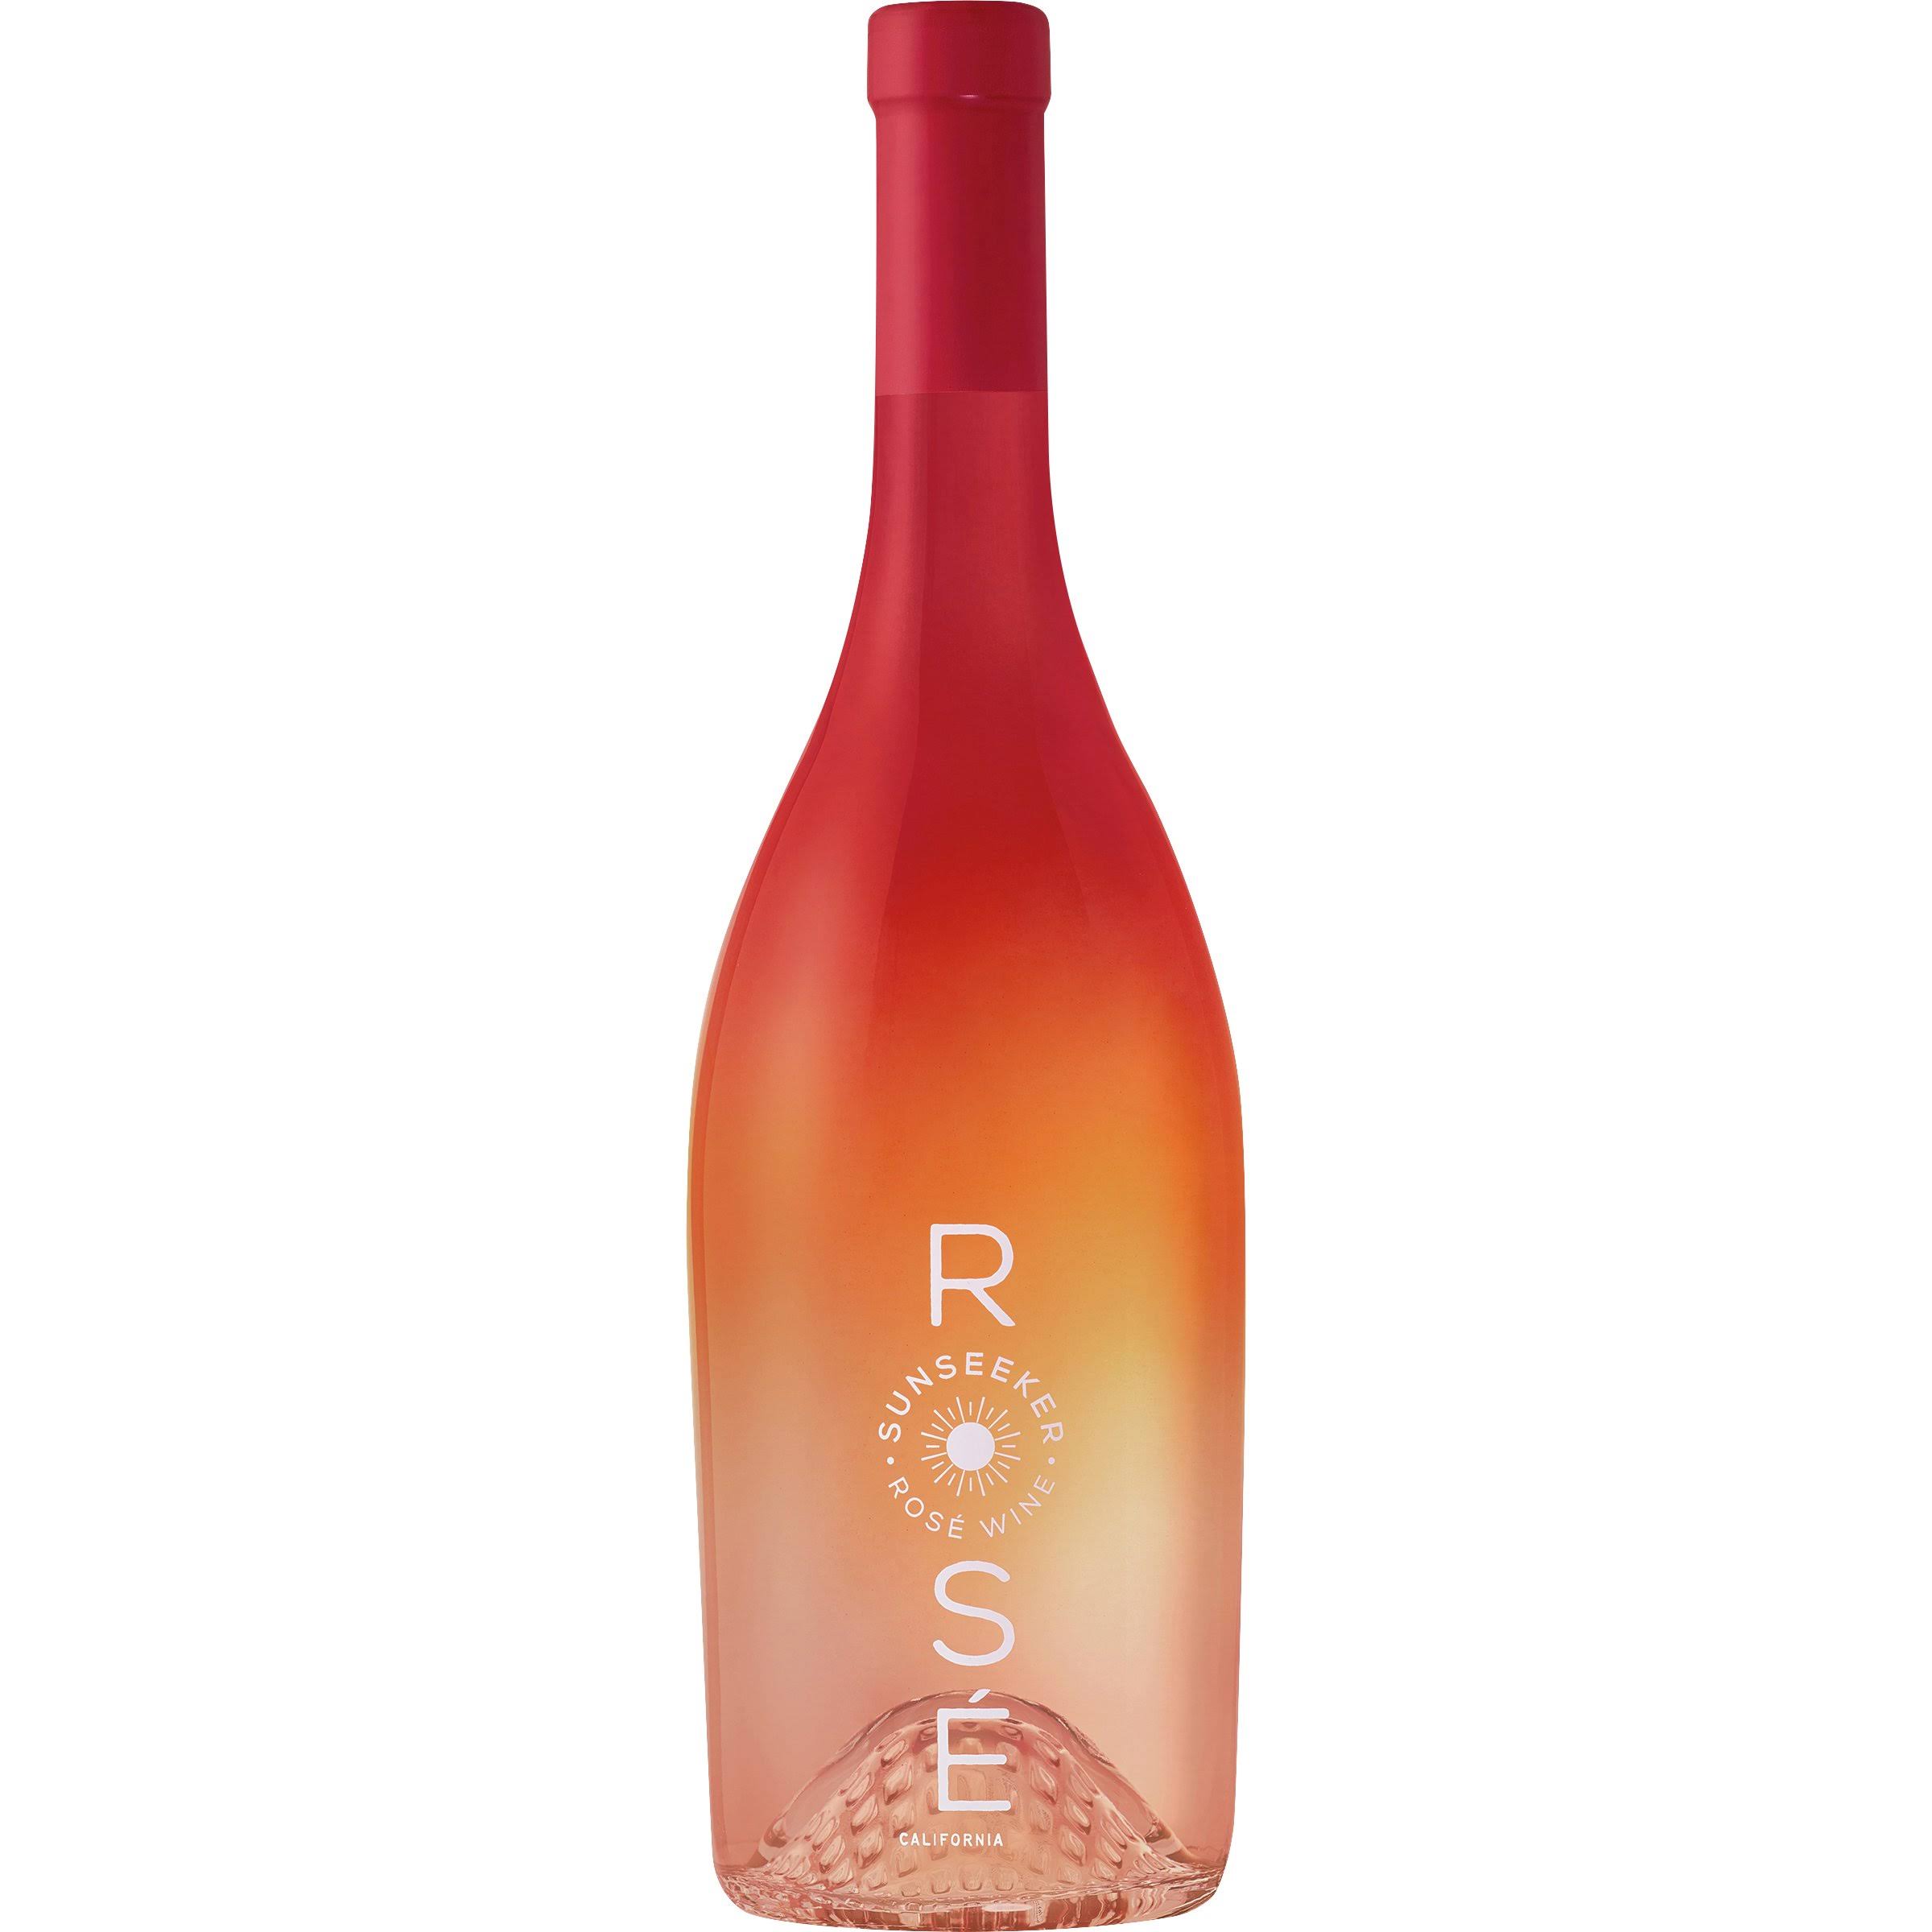 SunSeeker Rose, Sunseeker, California, 2018 - 750 ml